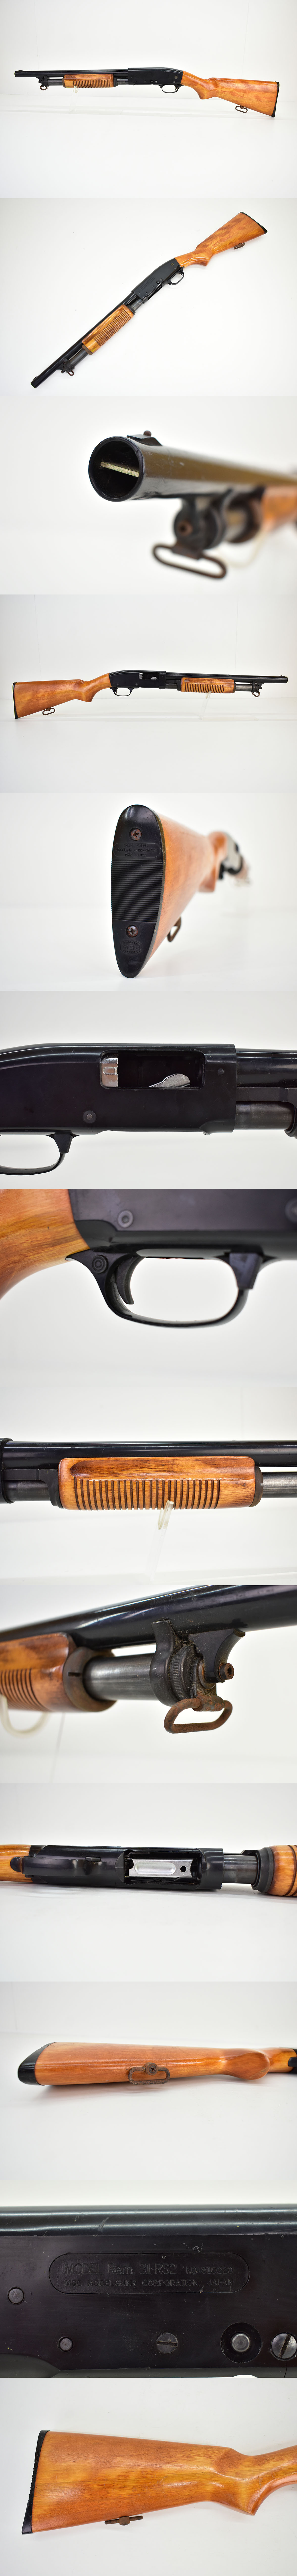 楽天市場MGC Remington M31 RS2 モデルガン [ショットガン][レミントンM31][樹脂製]M モデルガン